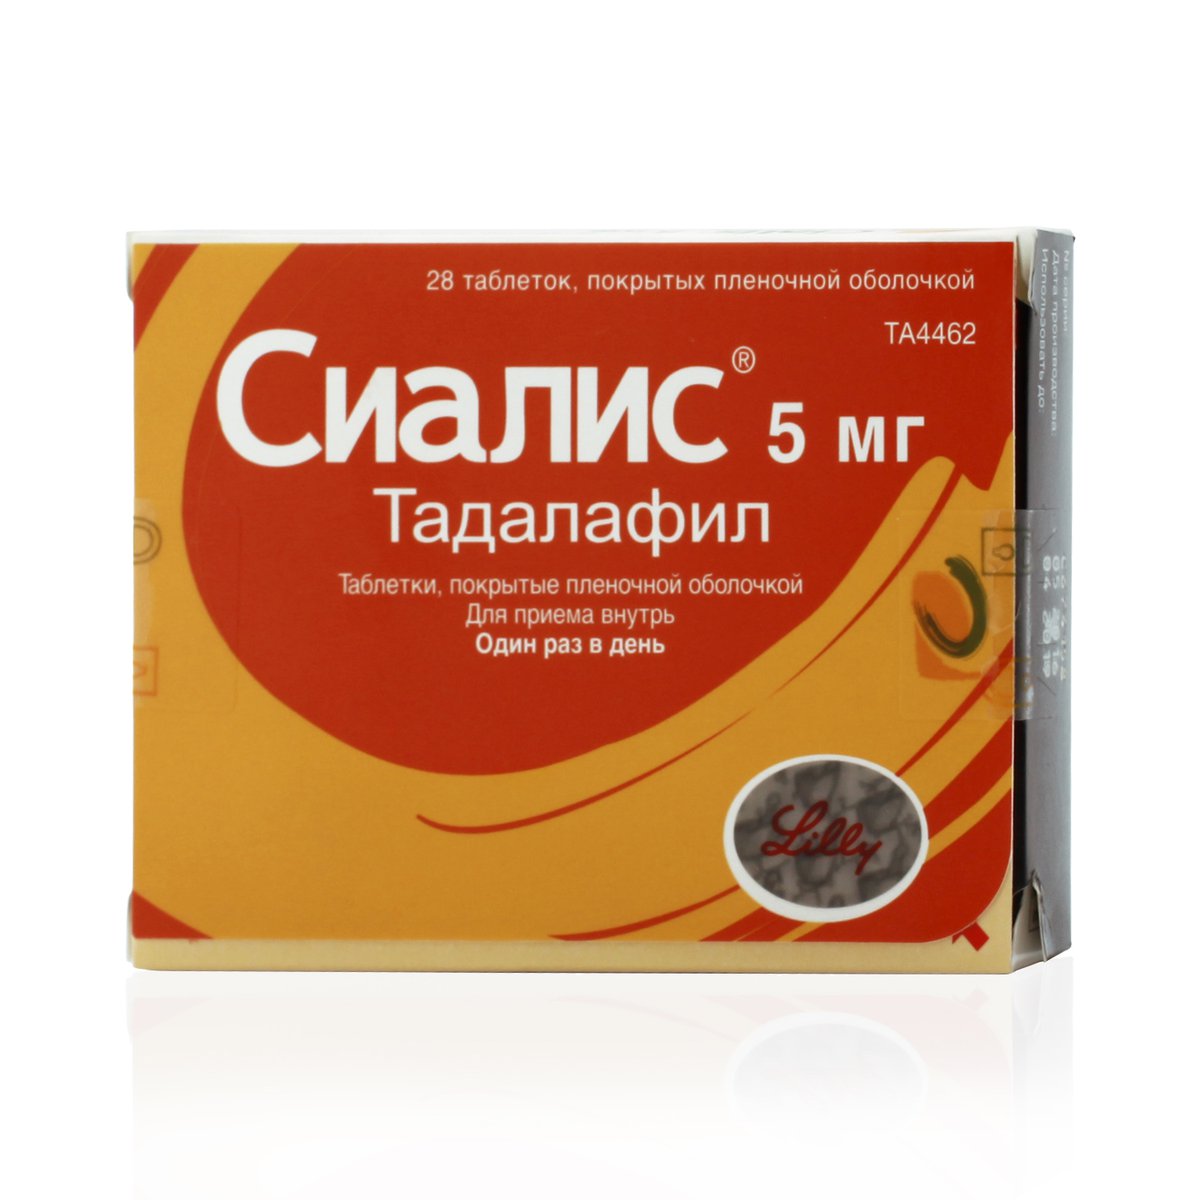 Сиалис (таблетки, 28 шт, 5 мг) - цена,  онлайн , описание .